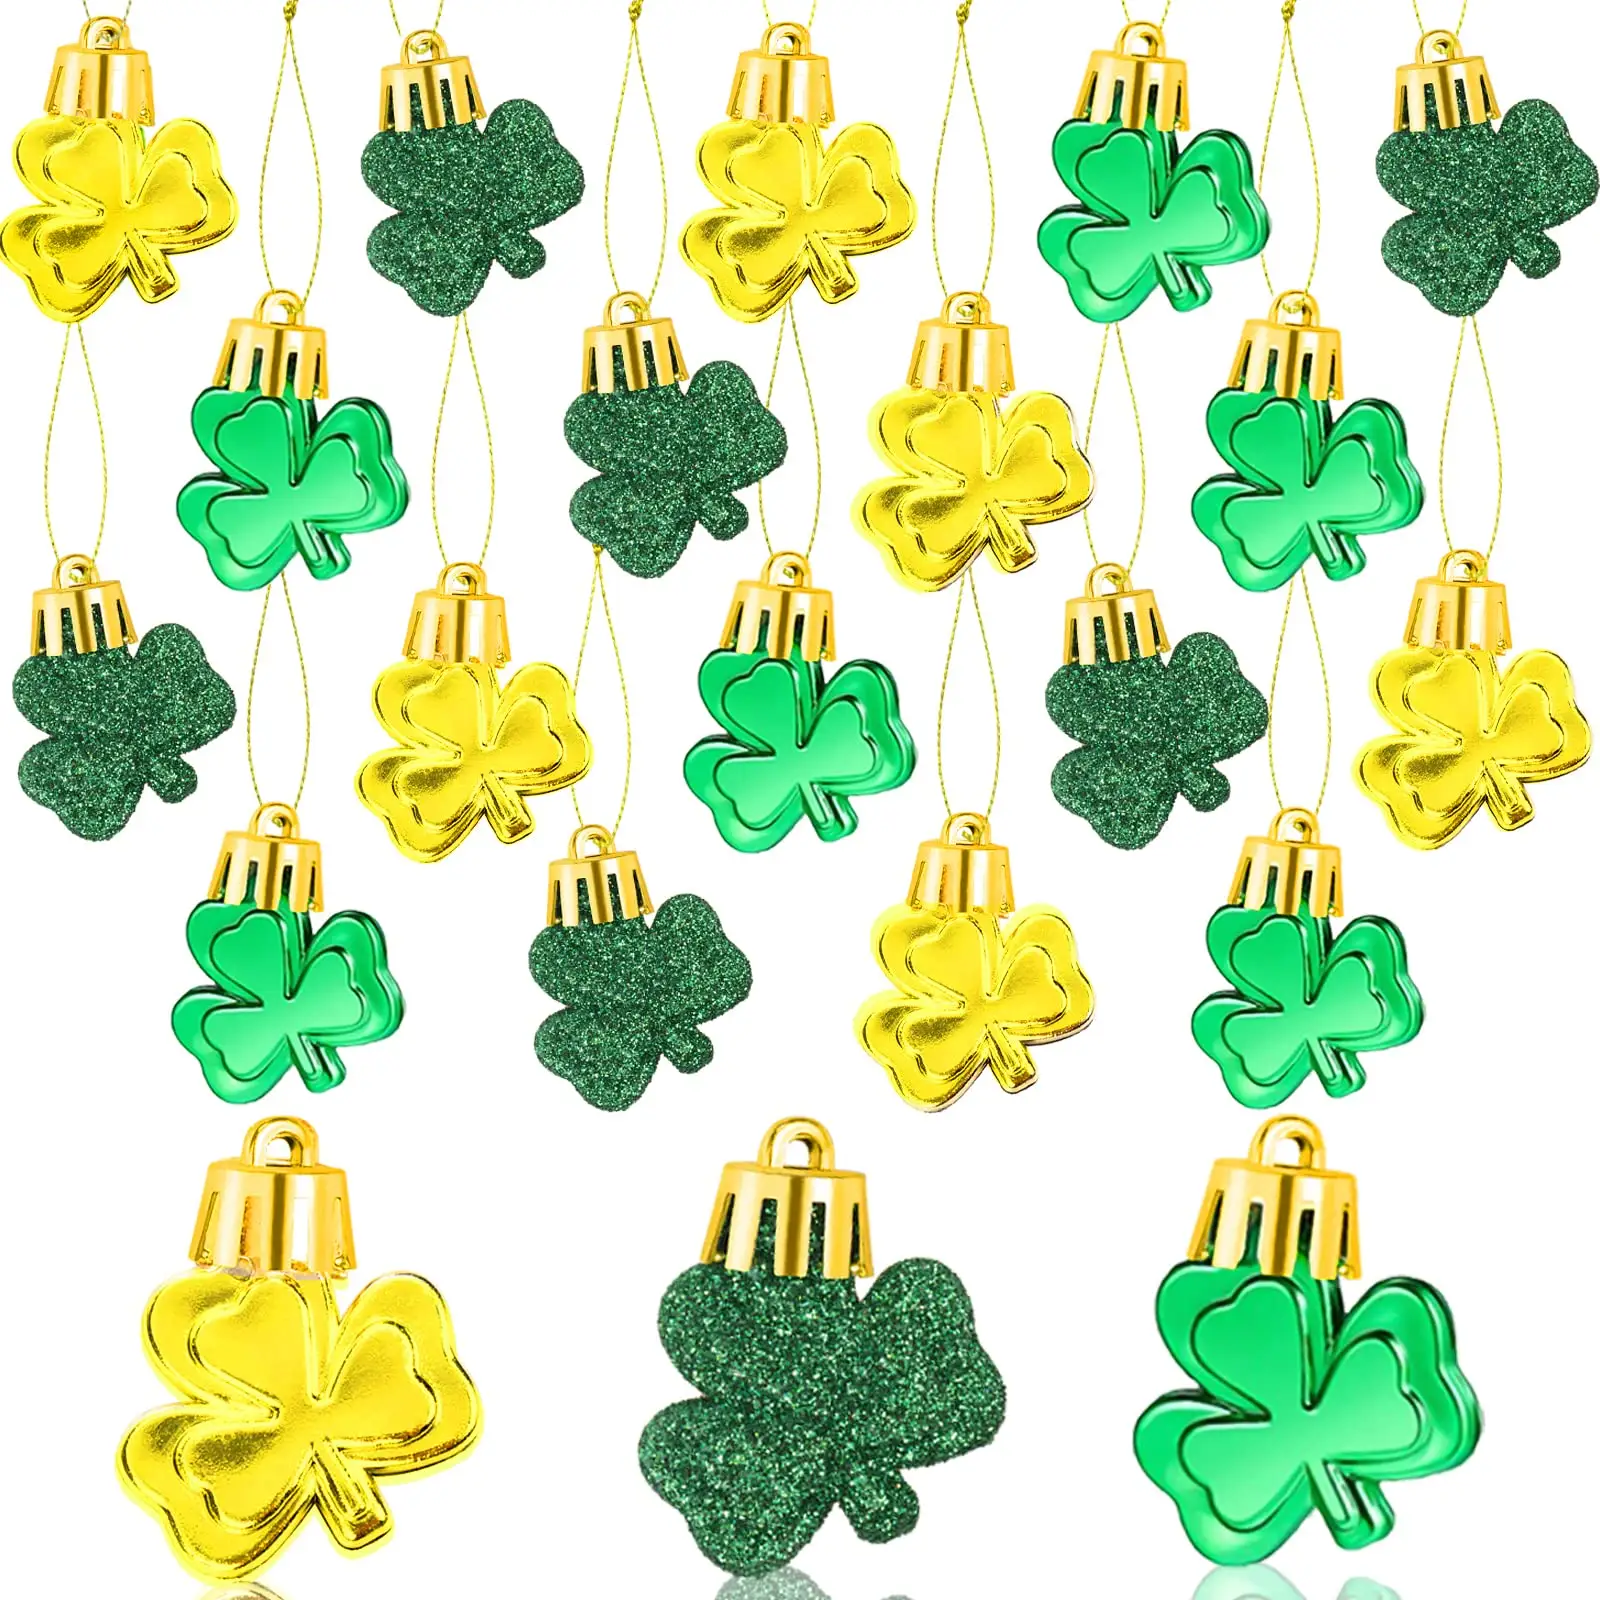 St. Patrick's Day Mini Shamrock hängender Ornament St. Patrick's Day Baumregal Dekoration Party Shining Gefälligkeiten Versorgung